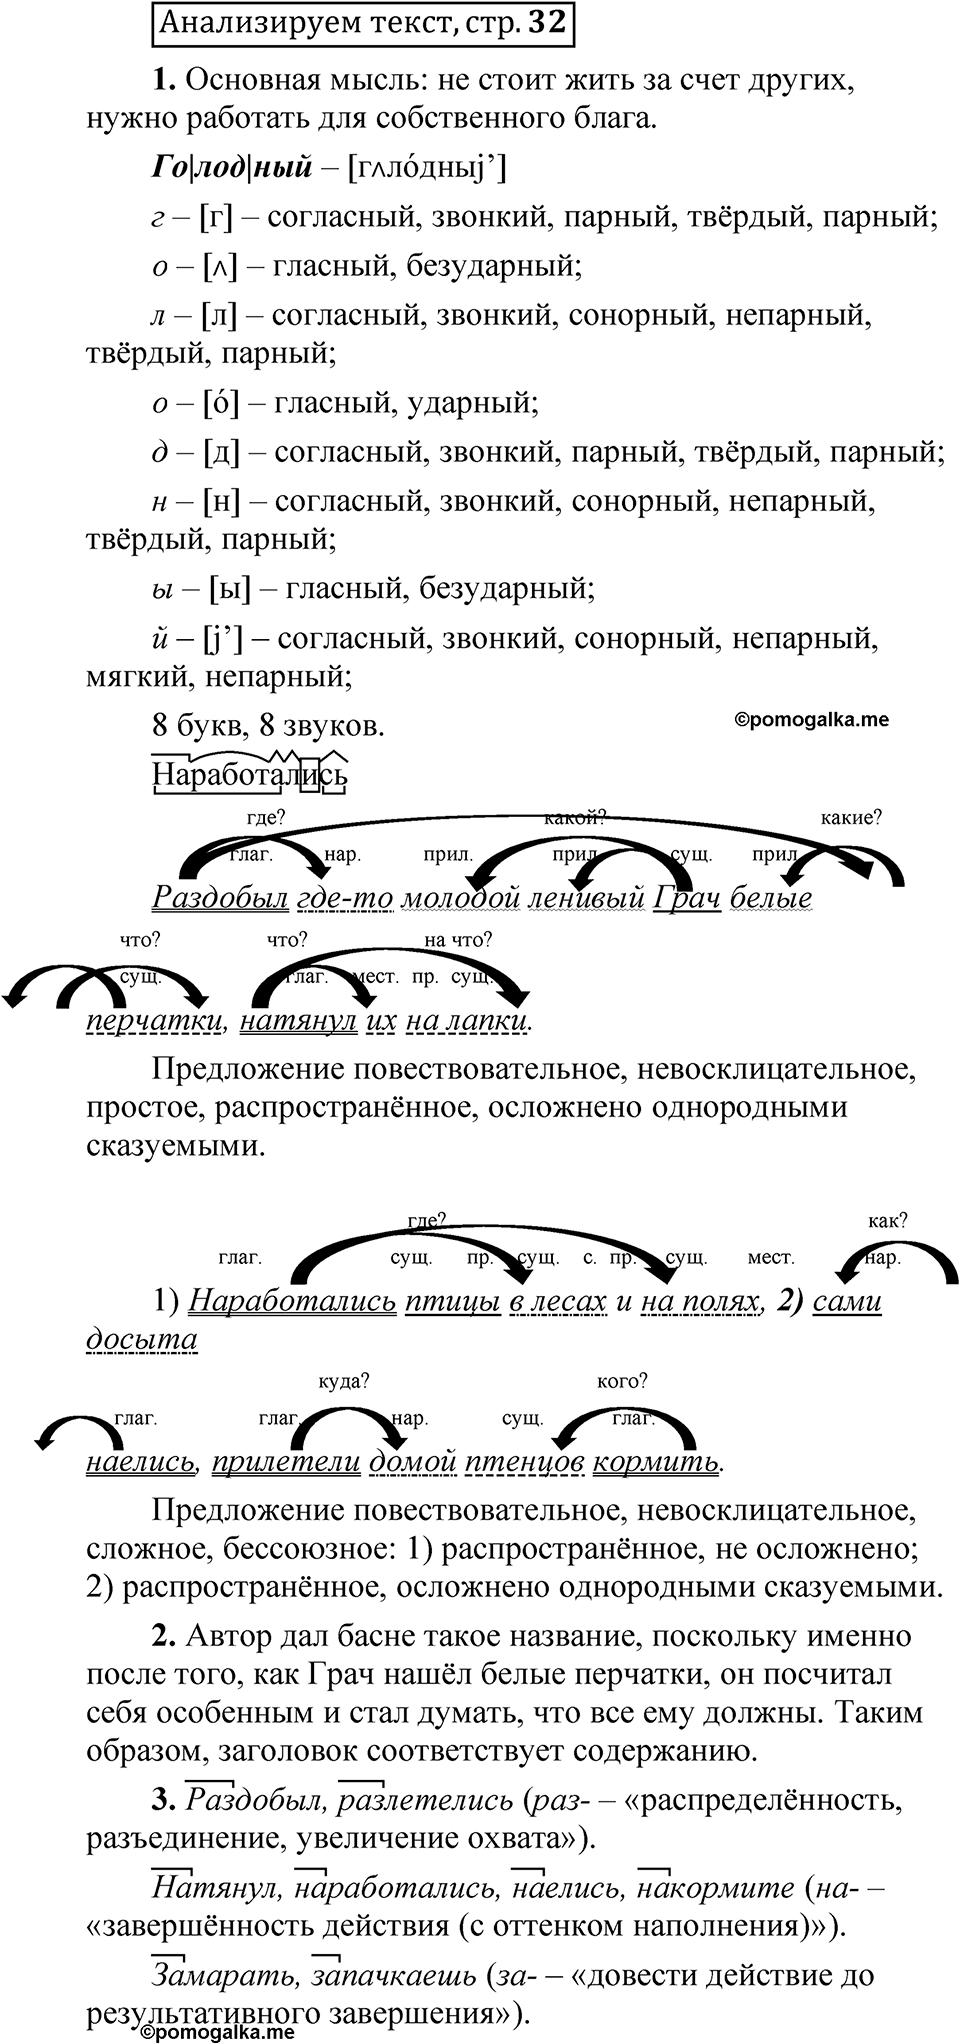 страница 32 Анализируем текст русский язык 5 класс Быстрова, Кибирева 2 часть 2021 год